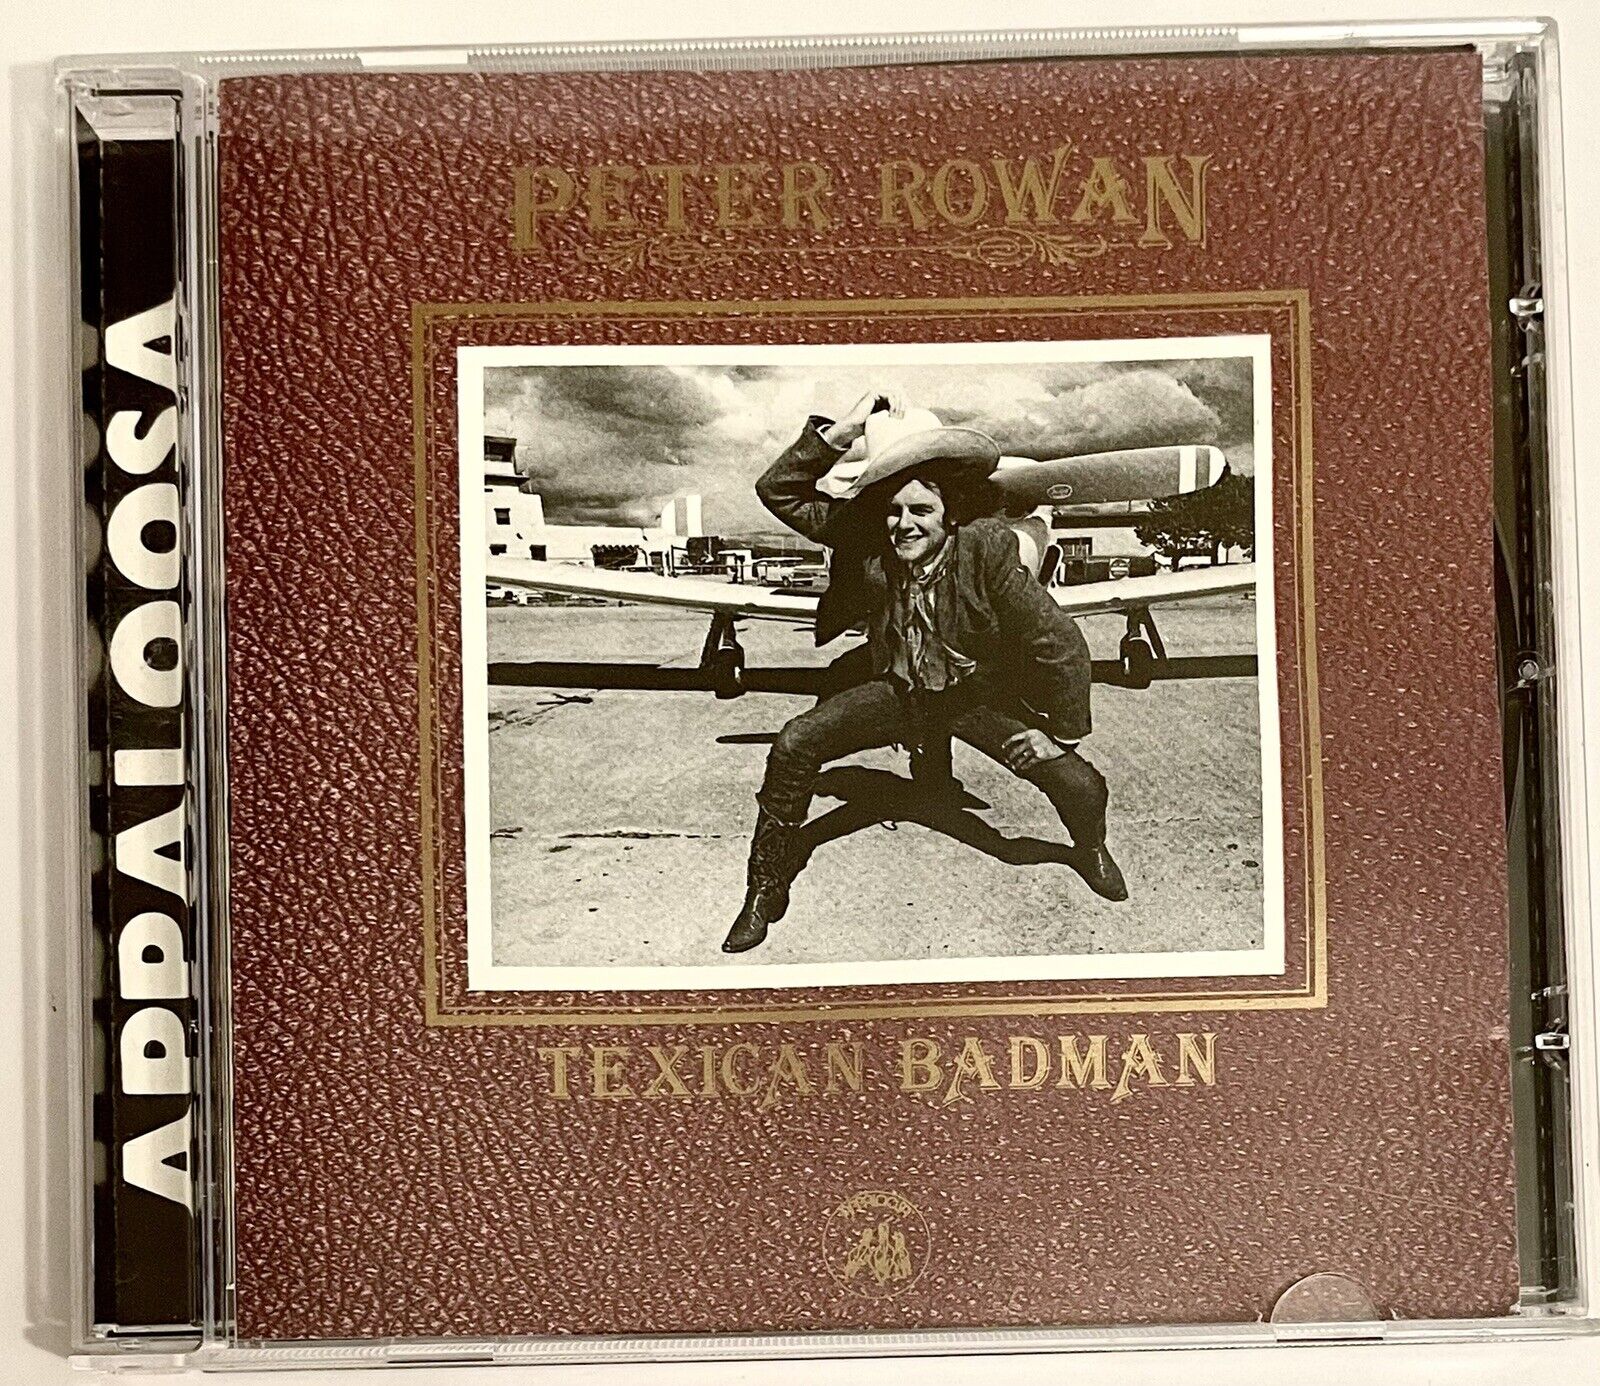 Peter Rowan, Texican Badman, CD, Italy, 2004